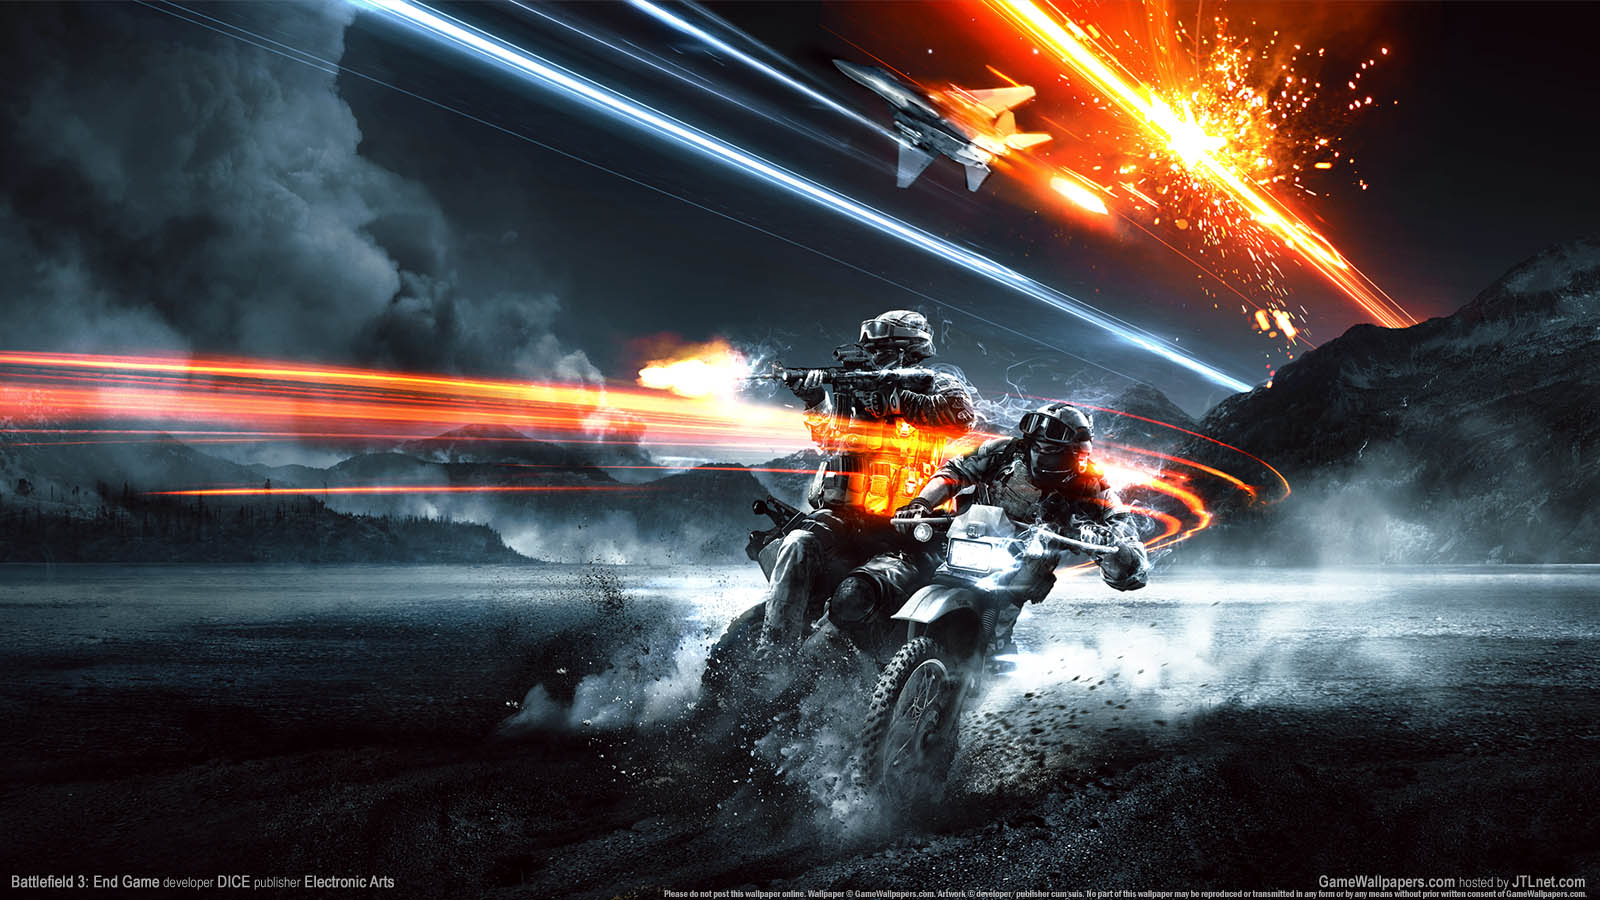 Battlefield 3%3A End Game wallpaper 01 1600x900